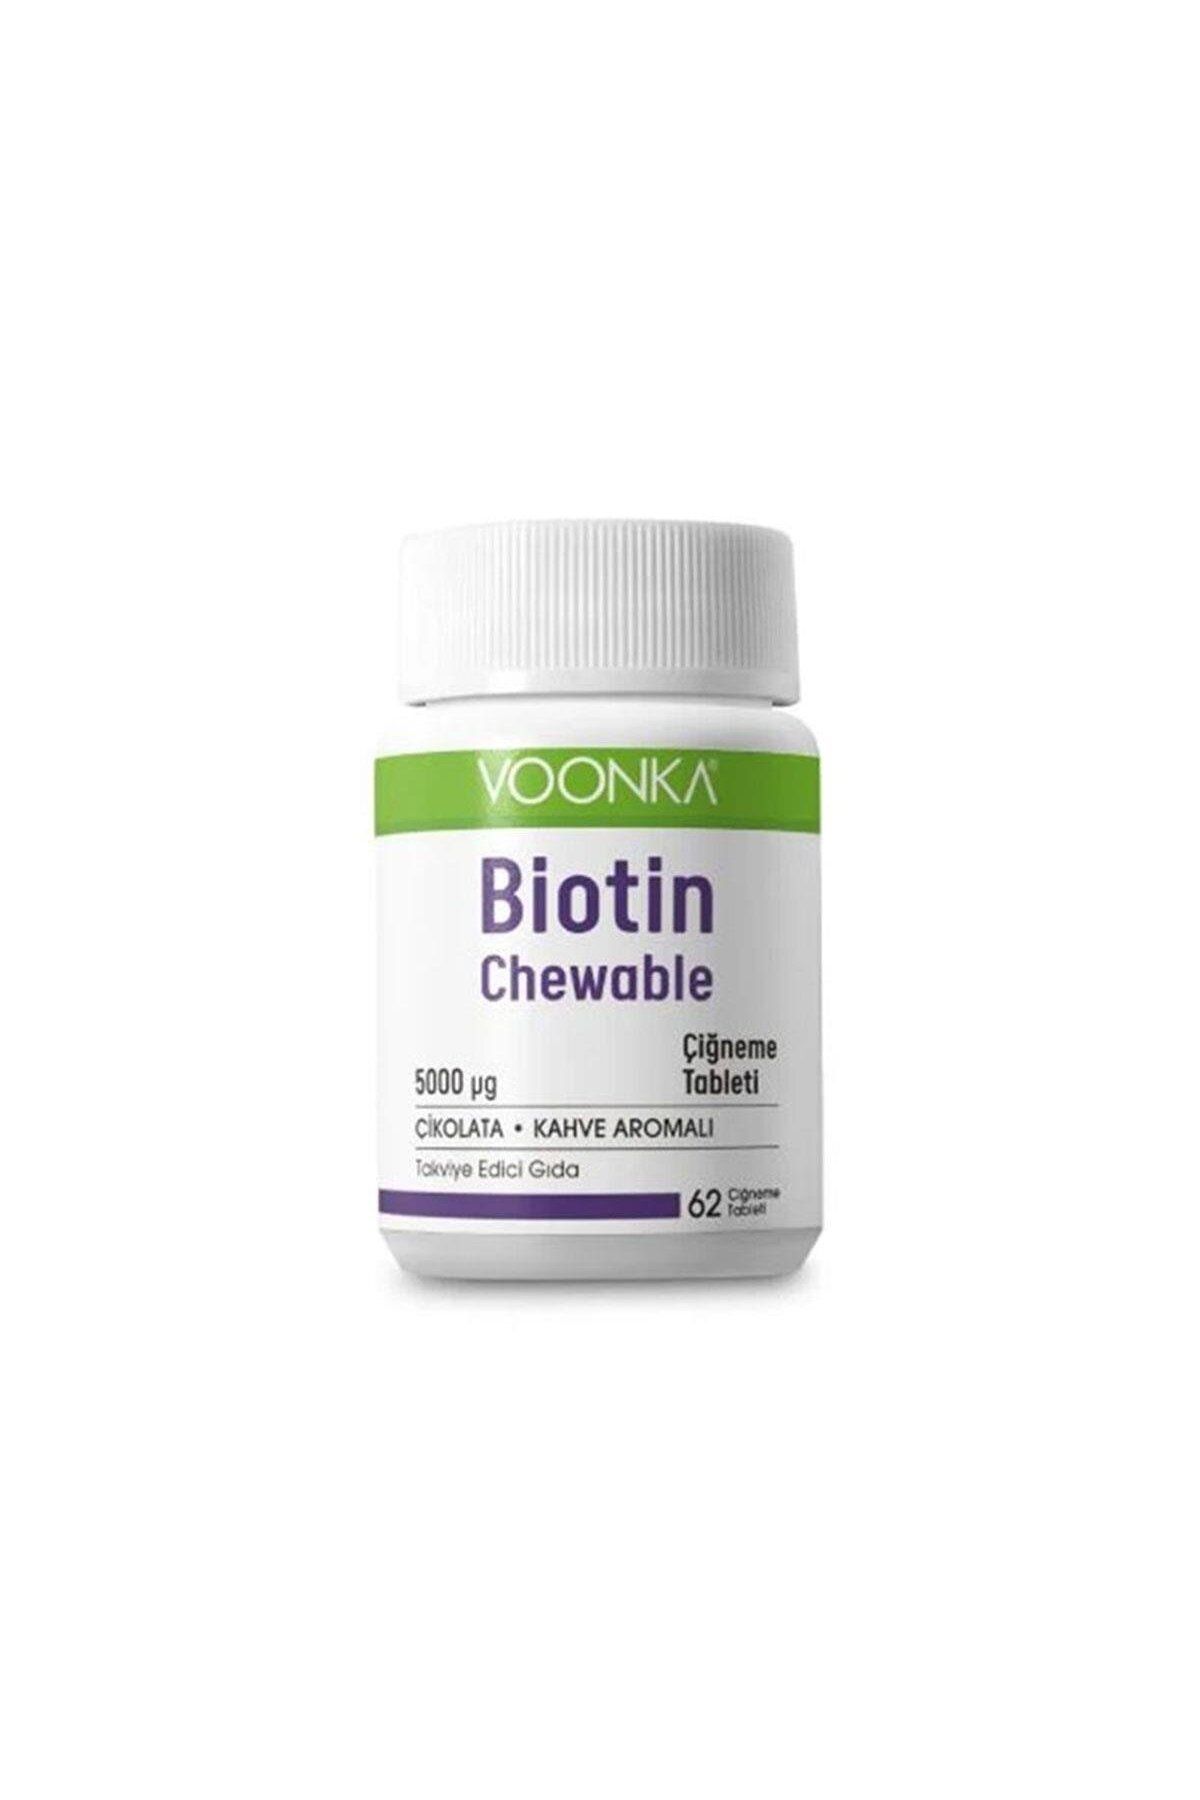 Voonka Biotin 5000 mcg Chewable Vitamin B7 İçeren Çikolata Kahve Aromalı Takviye Edici Gıda 62 Tablet